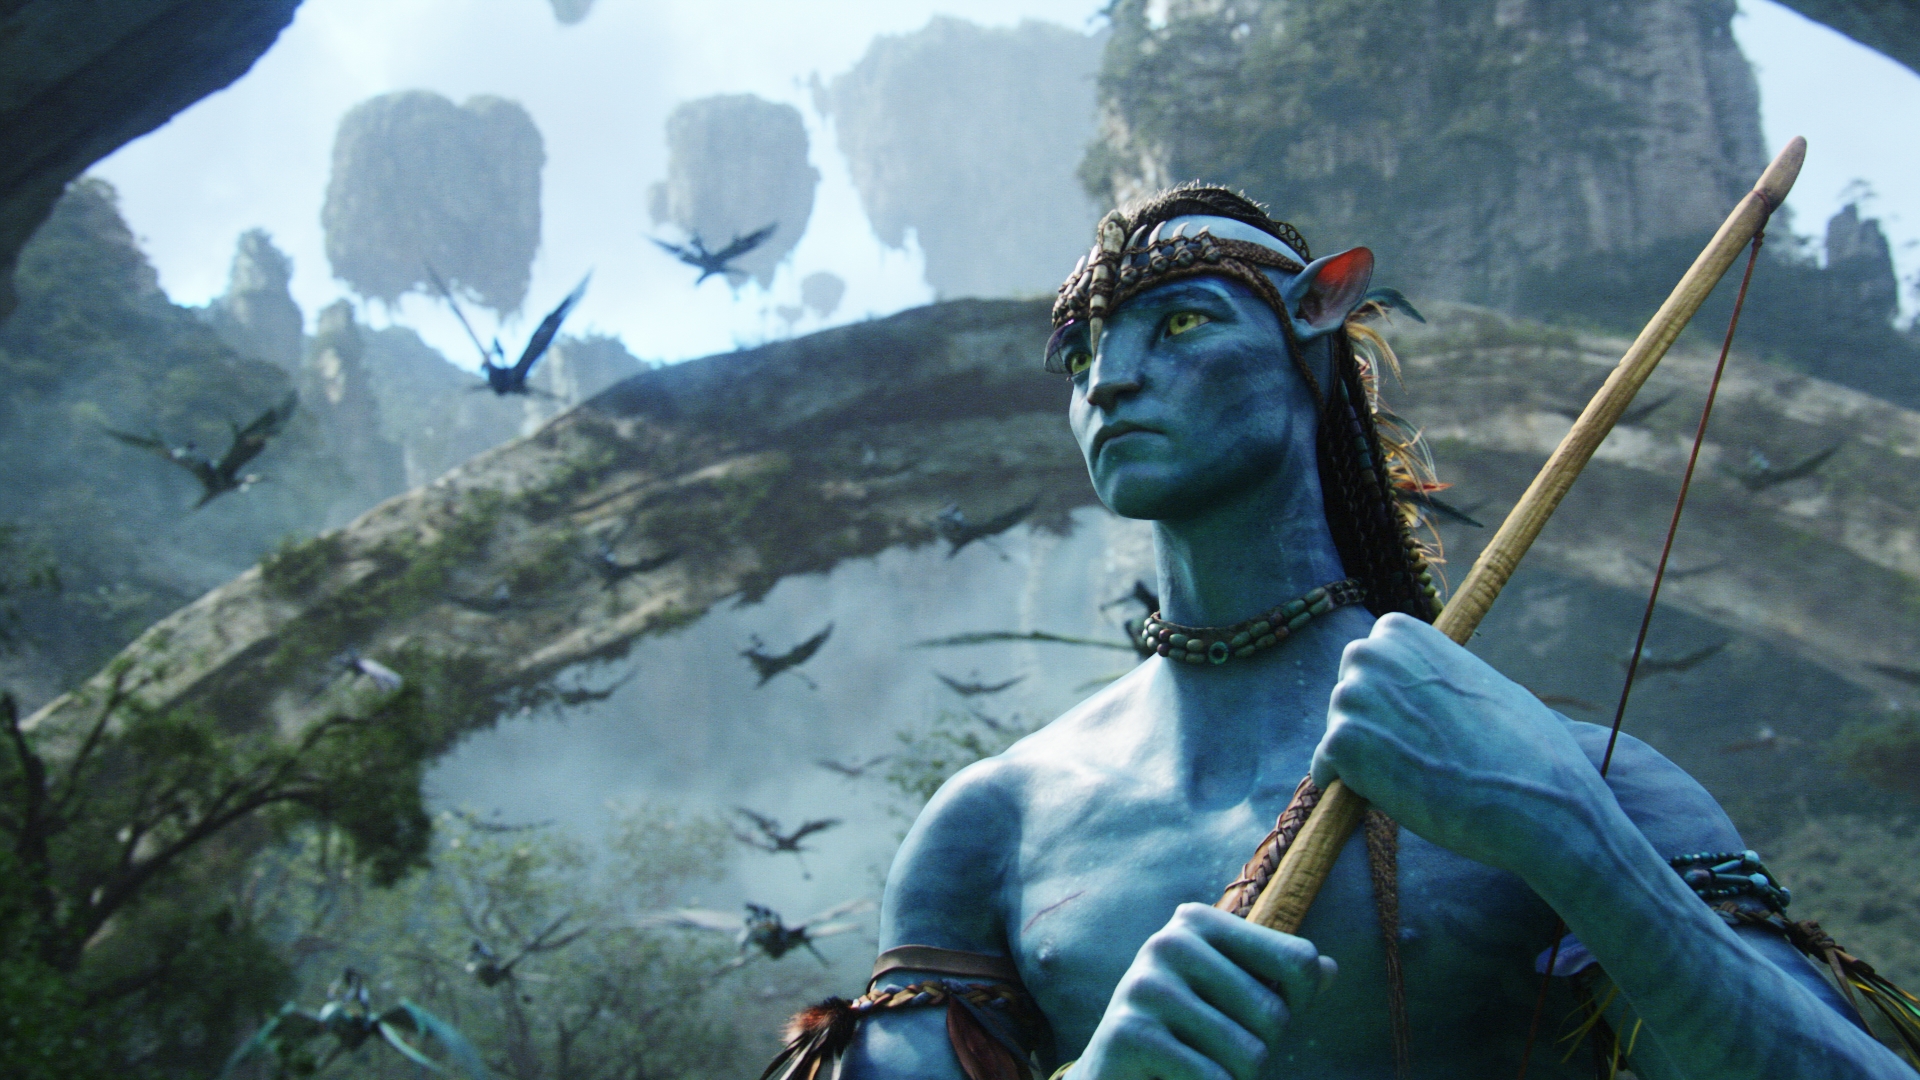 Ódivatú mese vagy modern klasszikus? Mit adott az embereknek az Avatar  világa? - Blikk